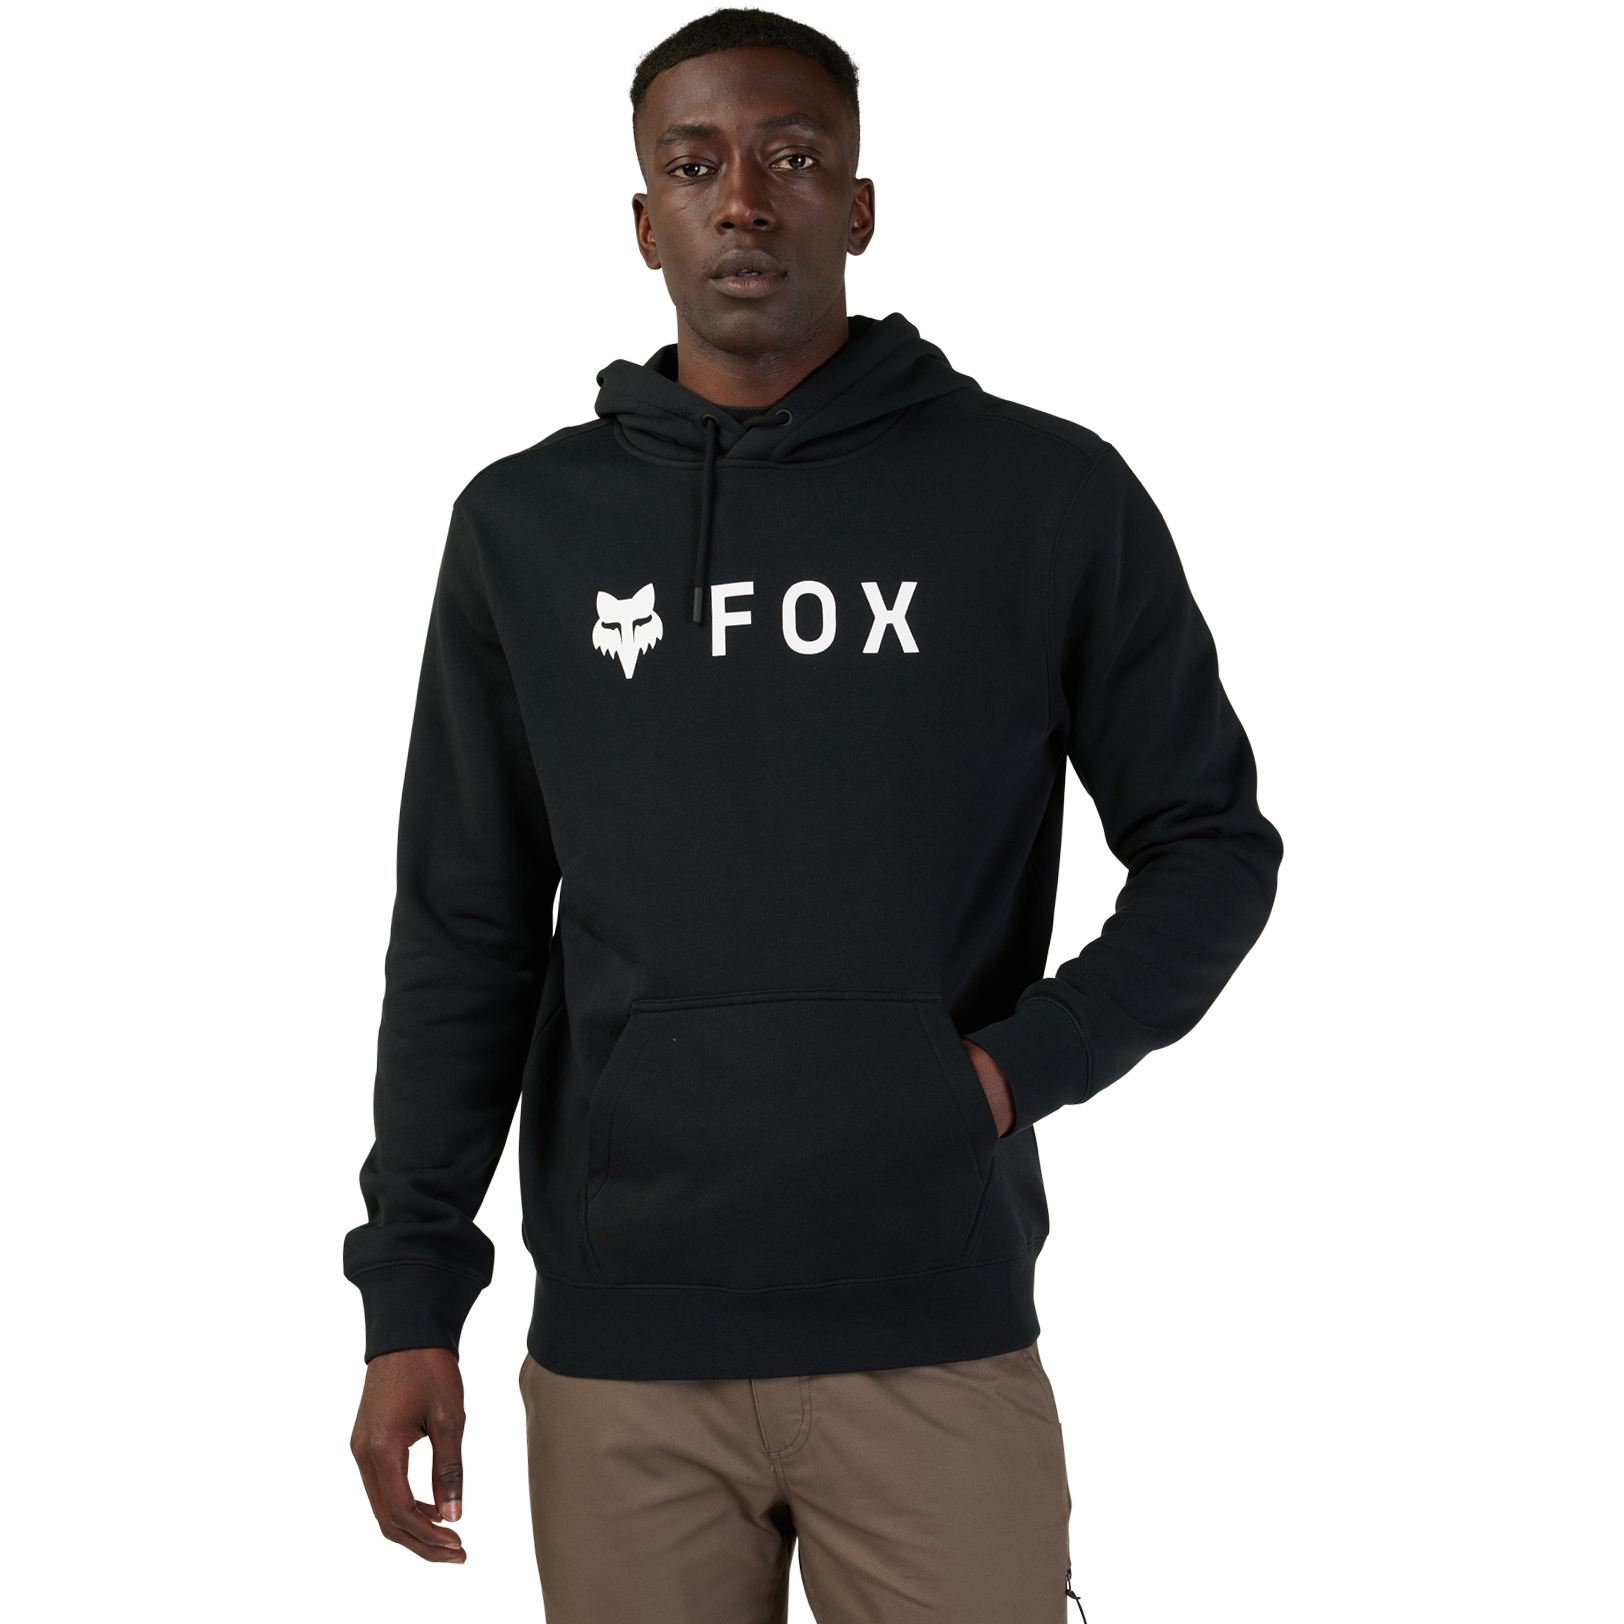 Produktbild von FOX Absolute Fleece Hoodie Herren - schwarz